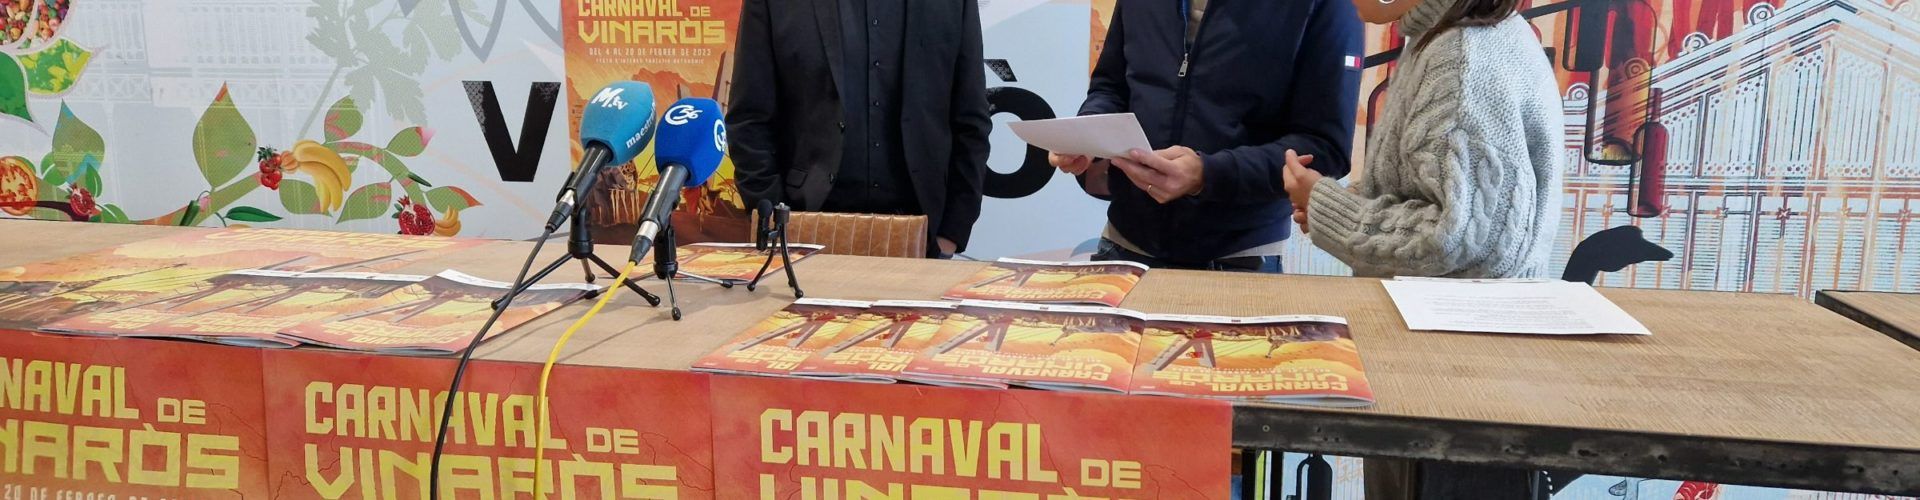 La programació i el llibret de Carnaval